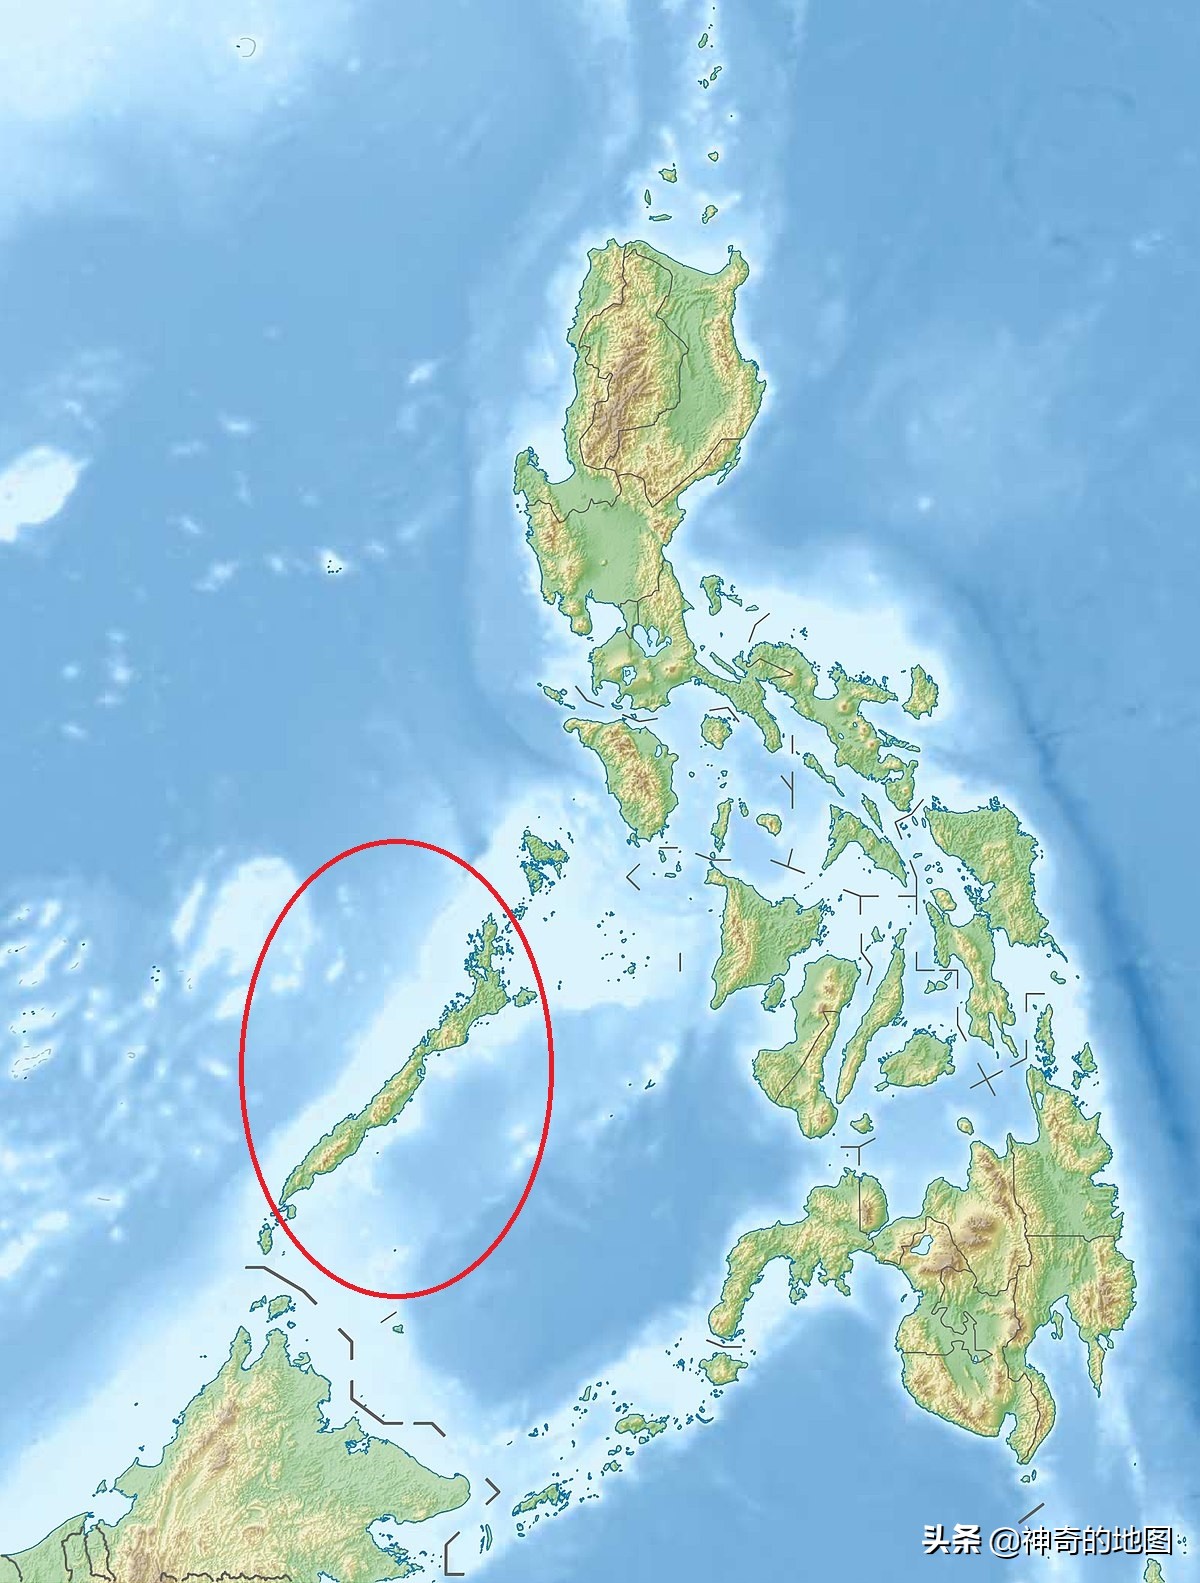 乱谈岛屿（30）巴拉望岛（Palawan）菲律宾的南海前进基地